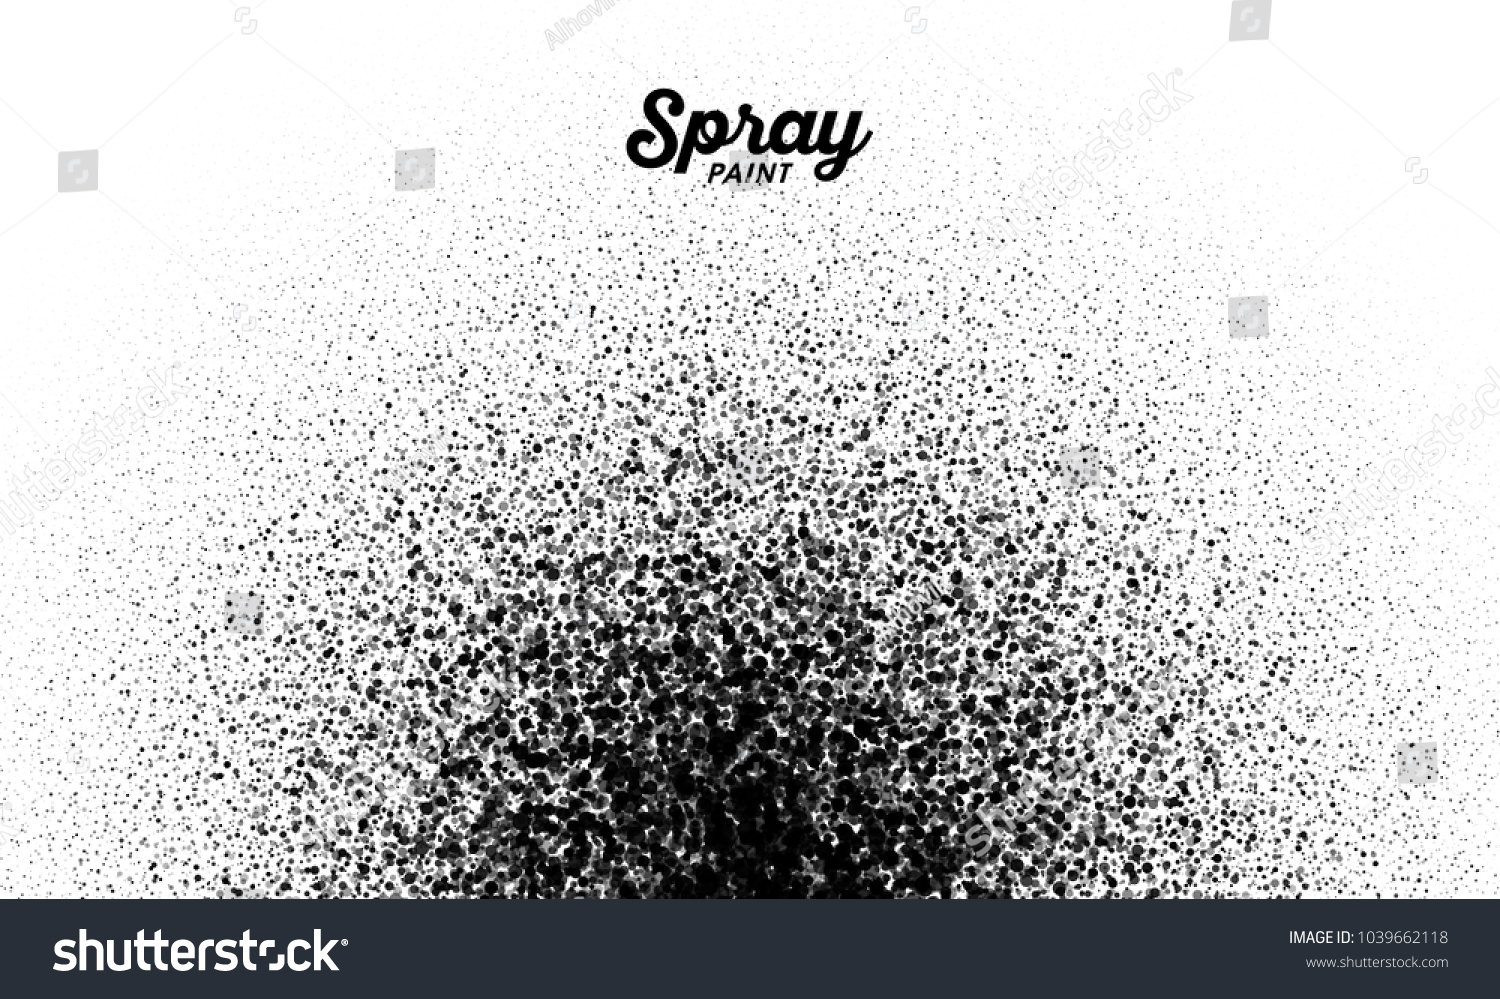 SVG of Spray paint splatter pattern, vector illustration svg